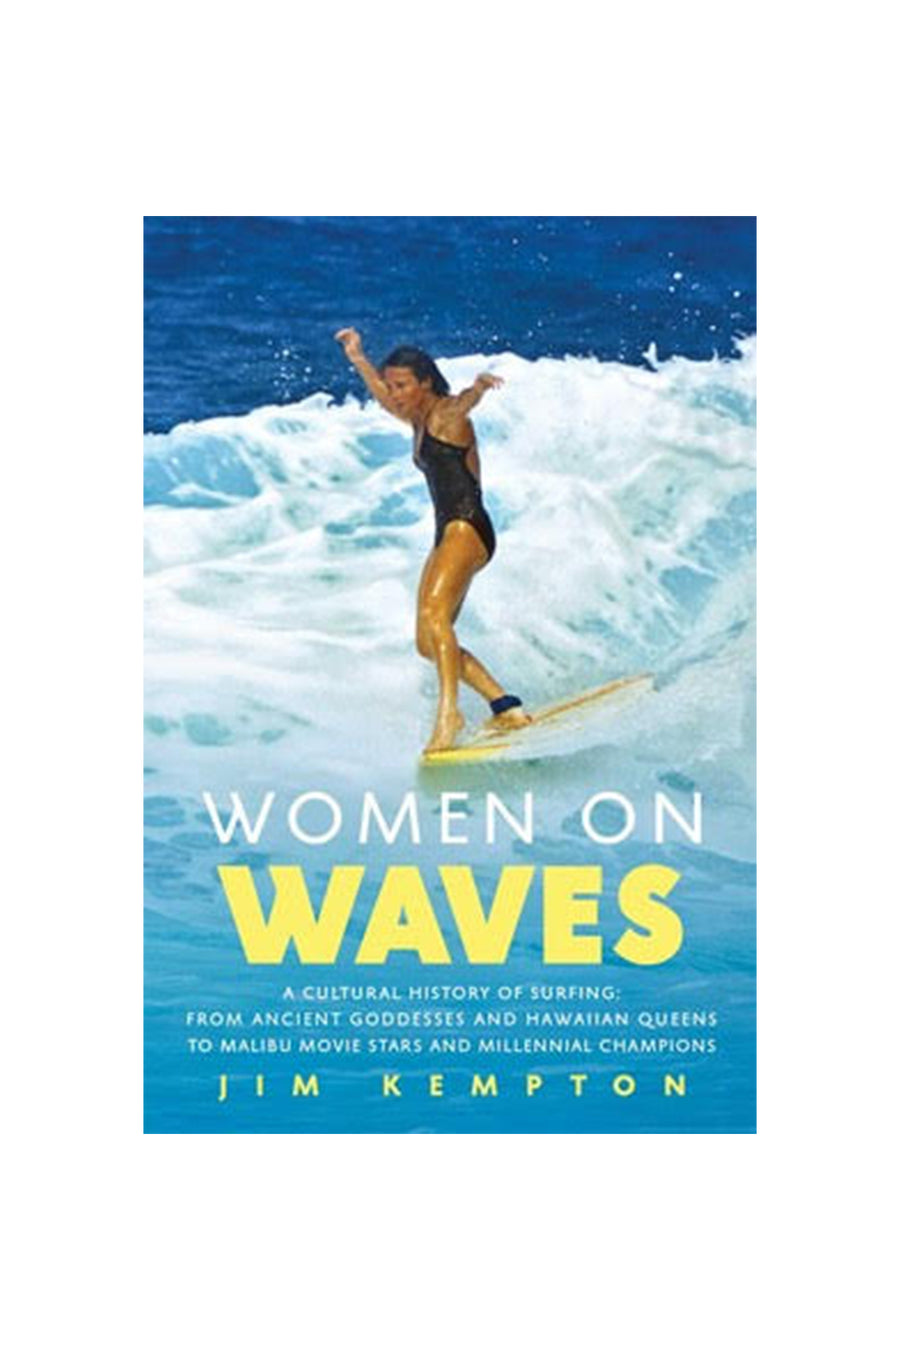 WOMEN ON WAVES